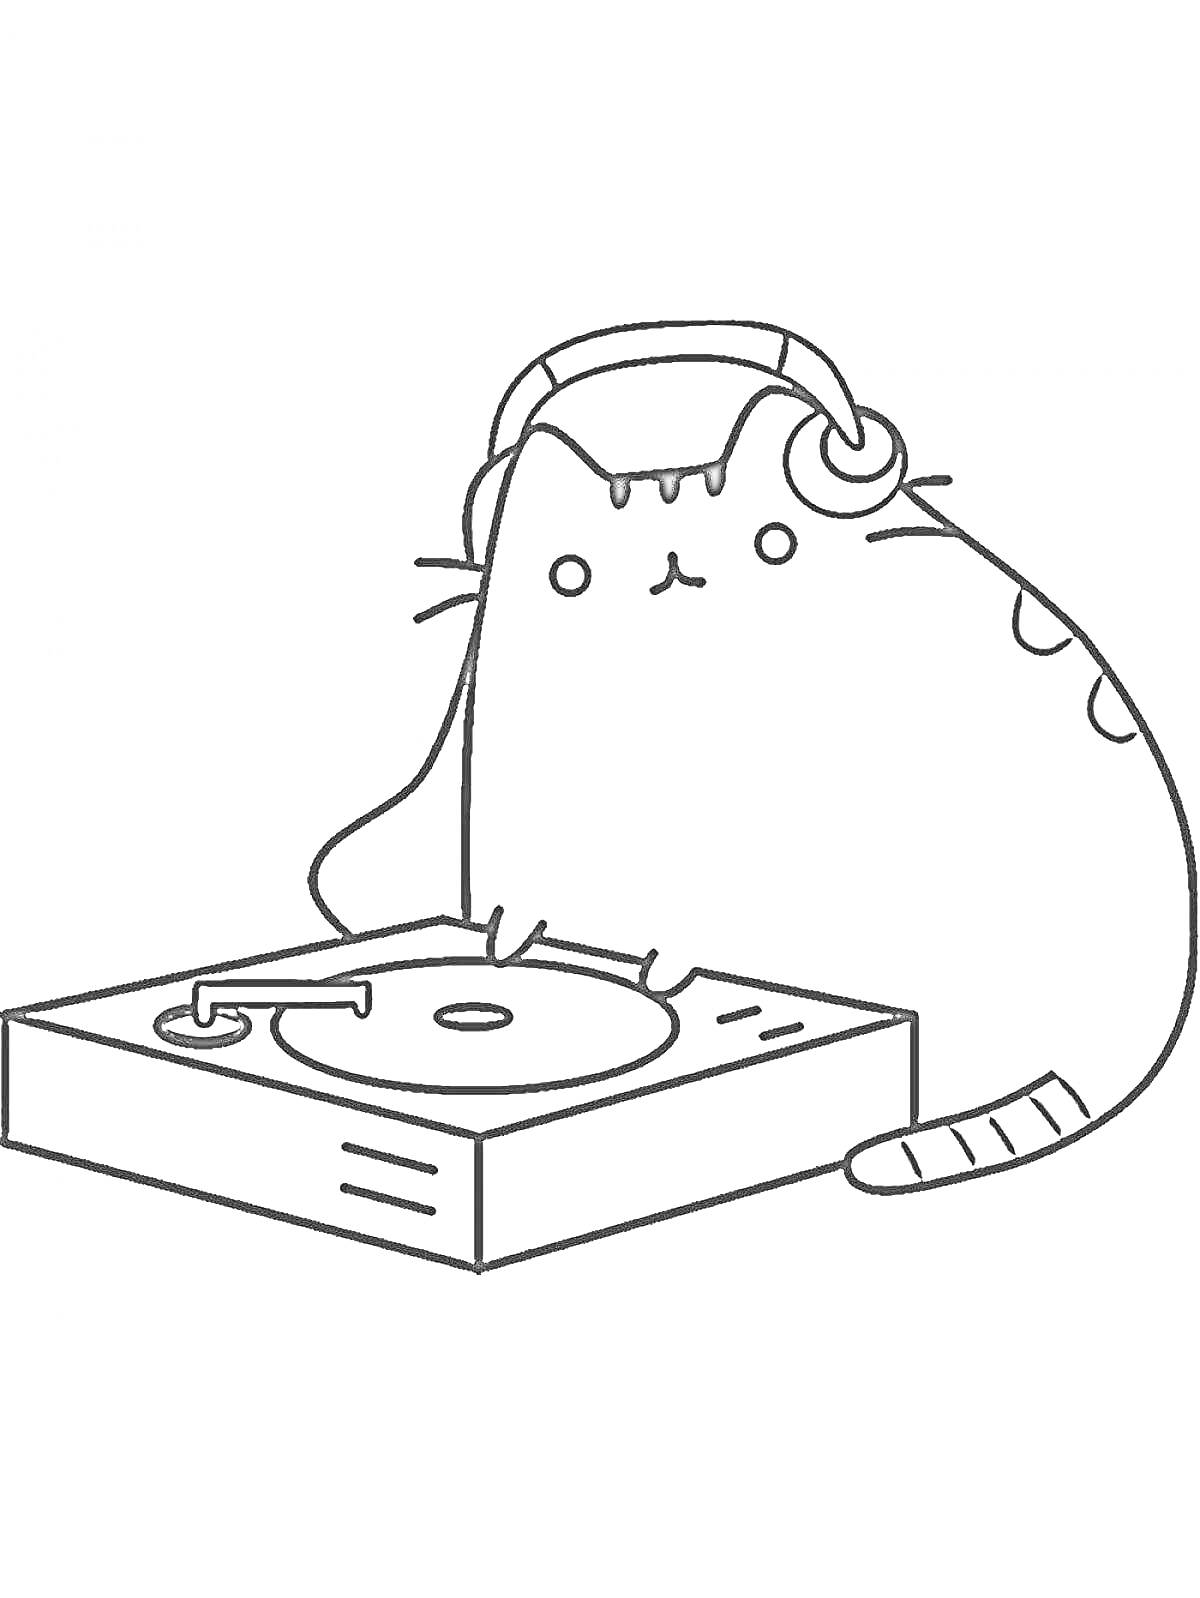 Раскраска Пушин в наушниках у DJ-пульта с виниловой пластинкой